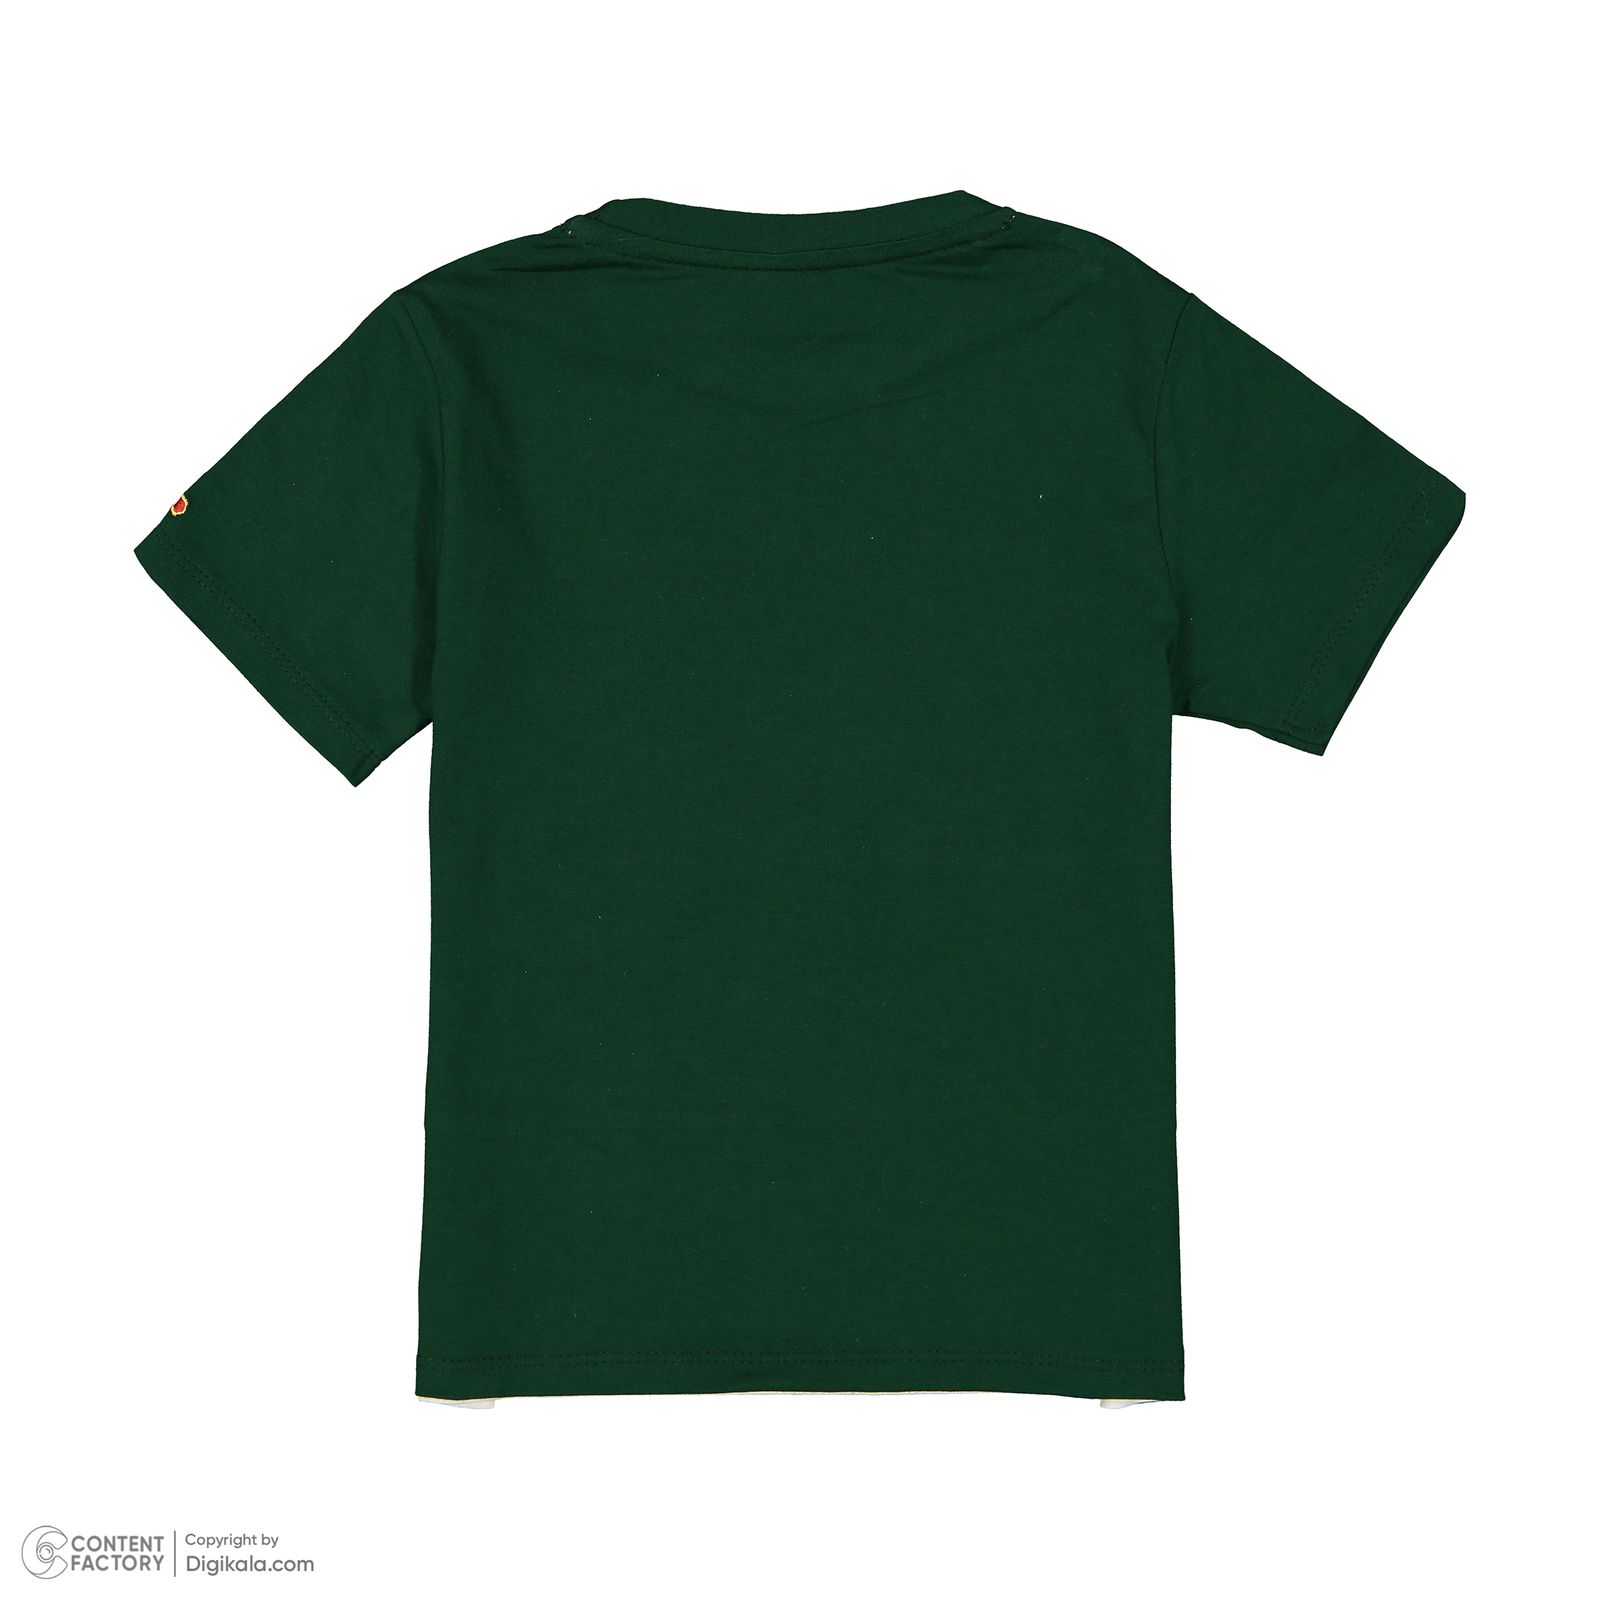 ست تی شرت و شلوارک پسرانه مادر مدل رایان 29 رنگ سبز -  - 6